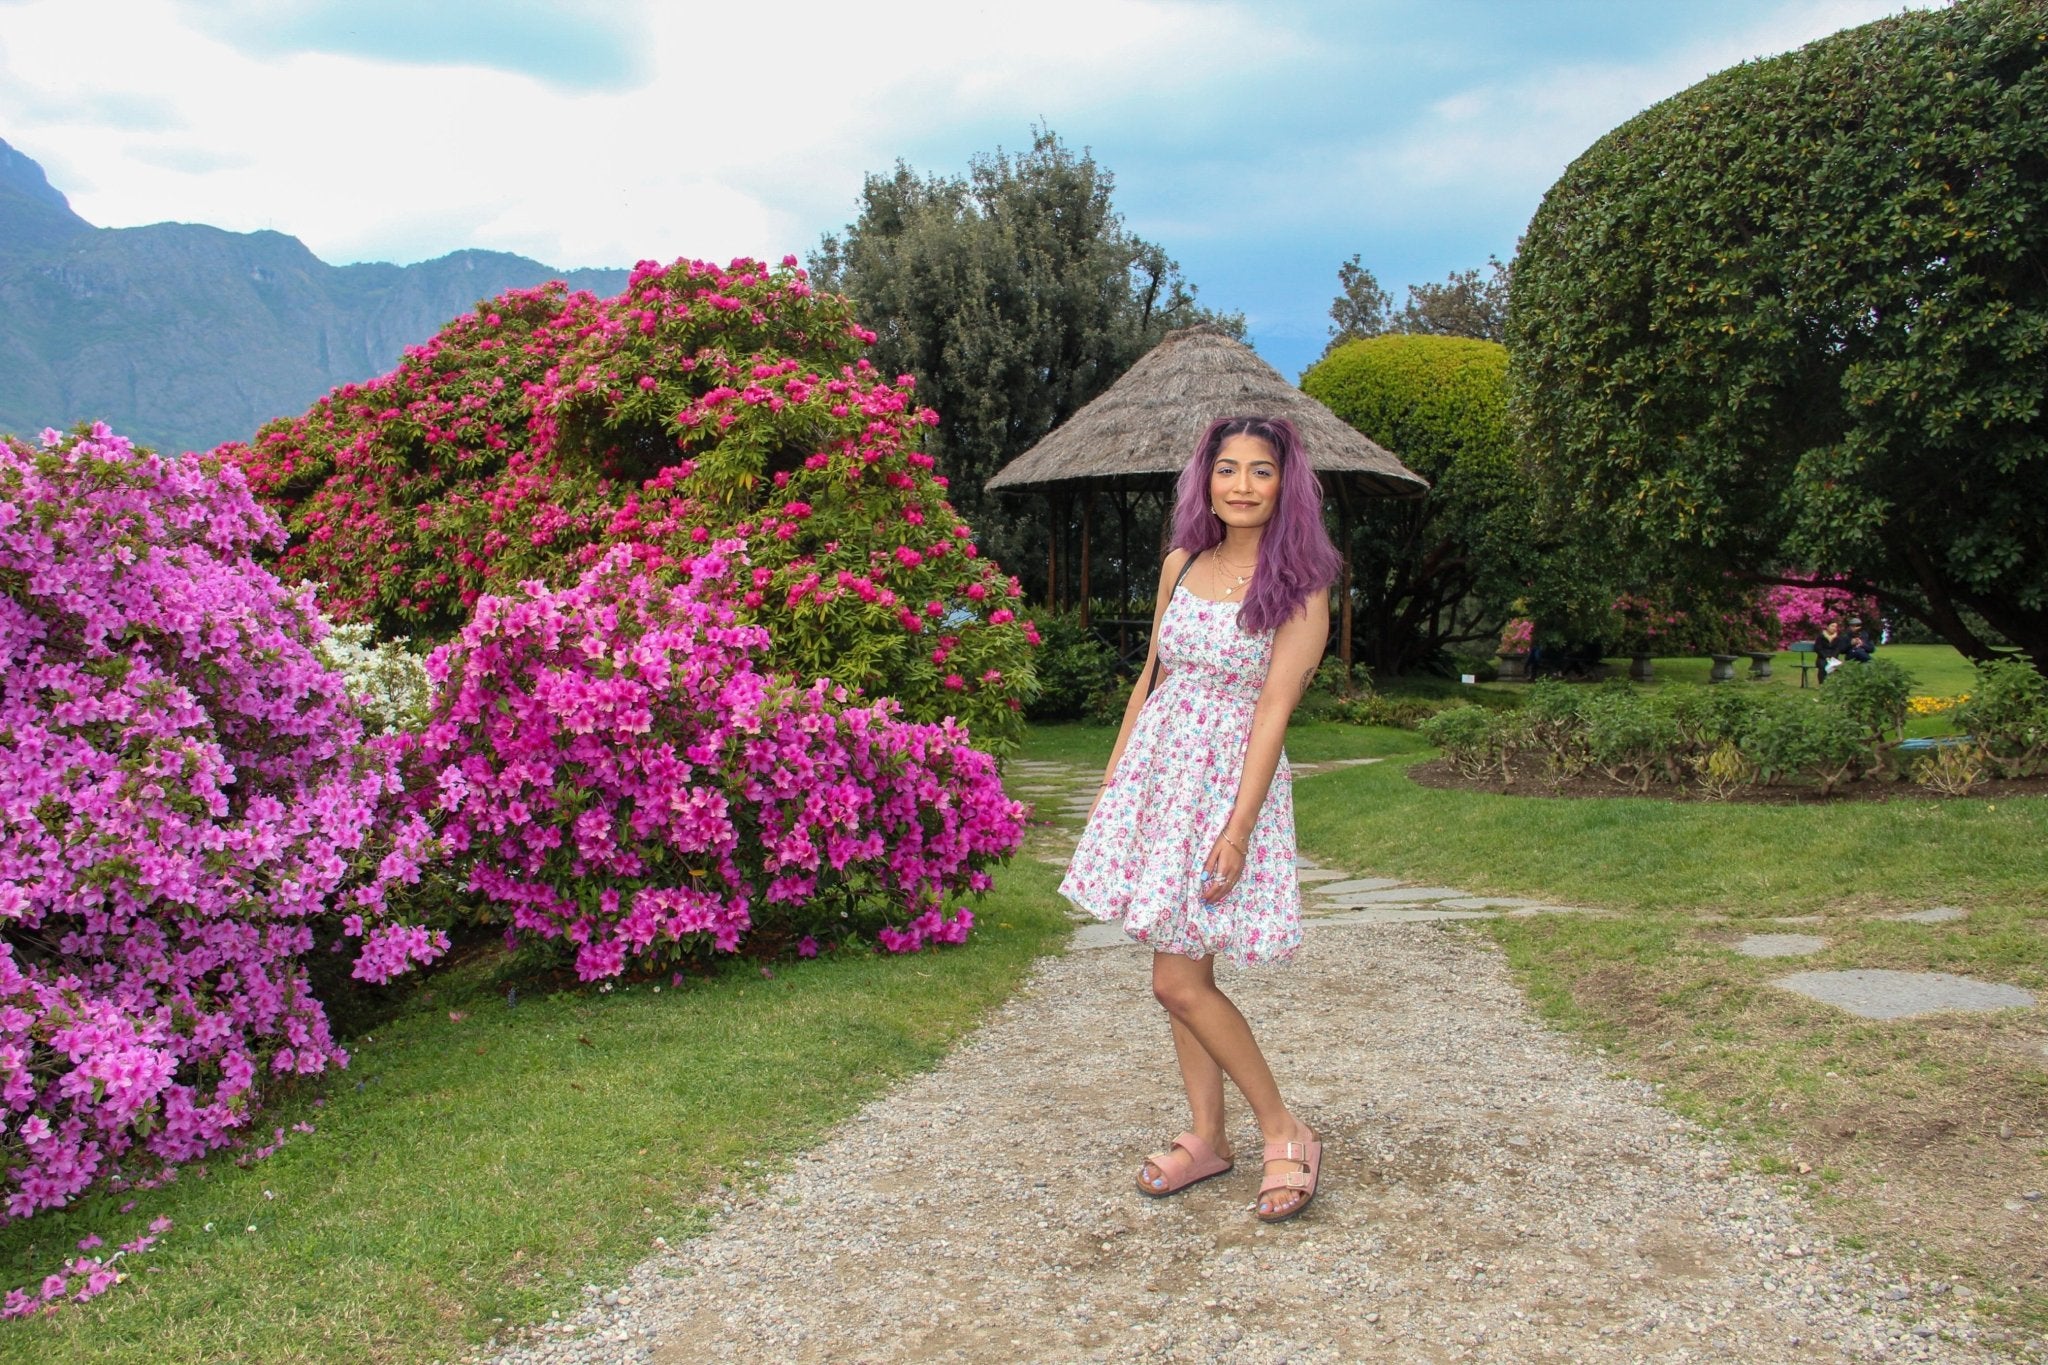 Photo Shoot at Villa Melzi Bellagio - Lake Como Photographer - FRAQAIR